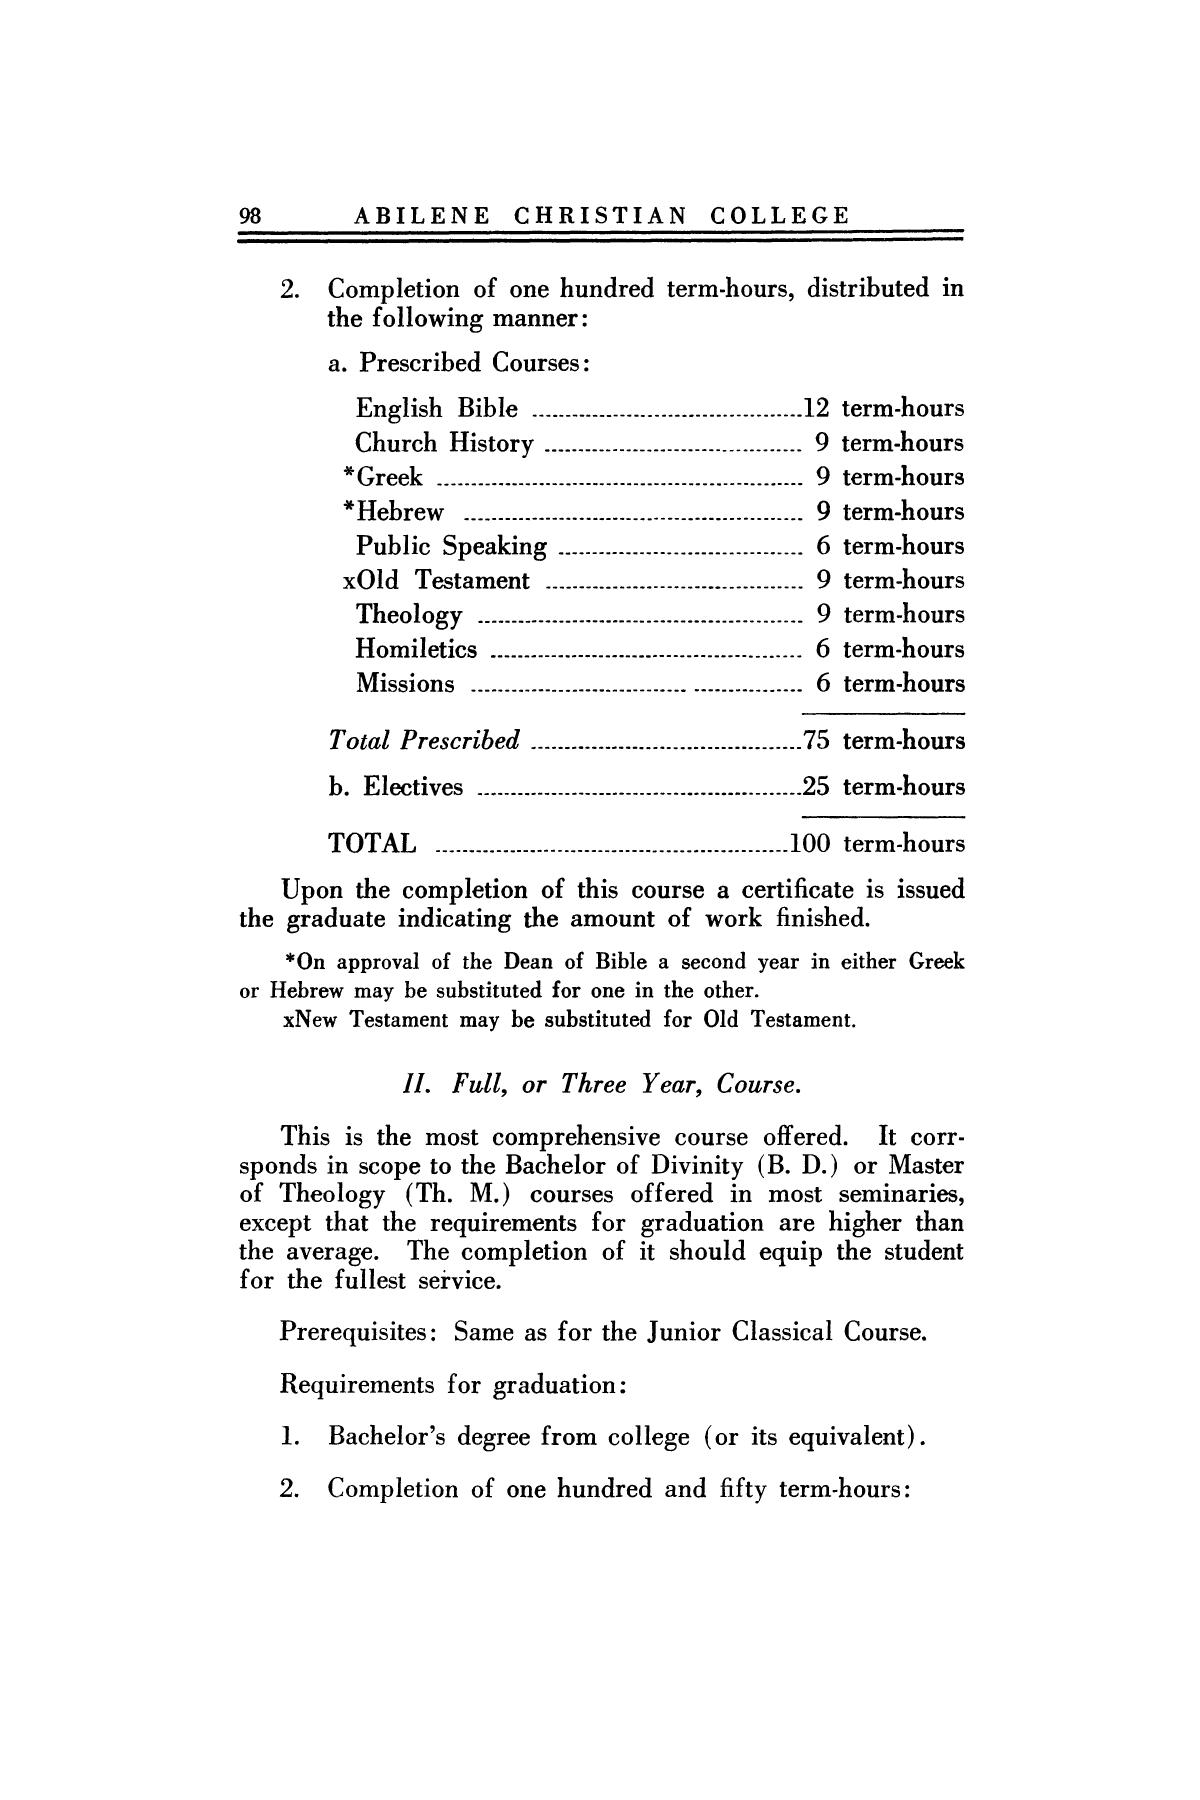 Catalog of Abilene Christian College, 1923-1924
                                                
                                                    98
                                                